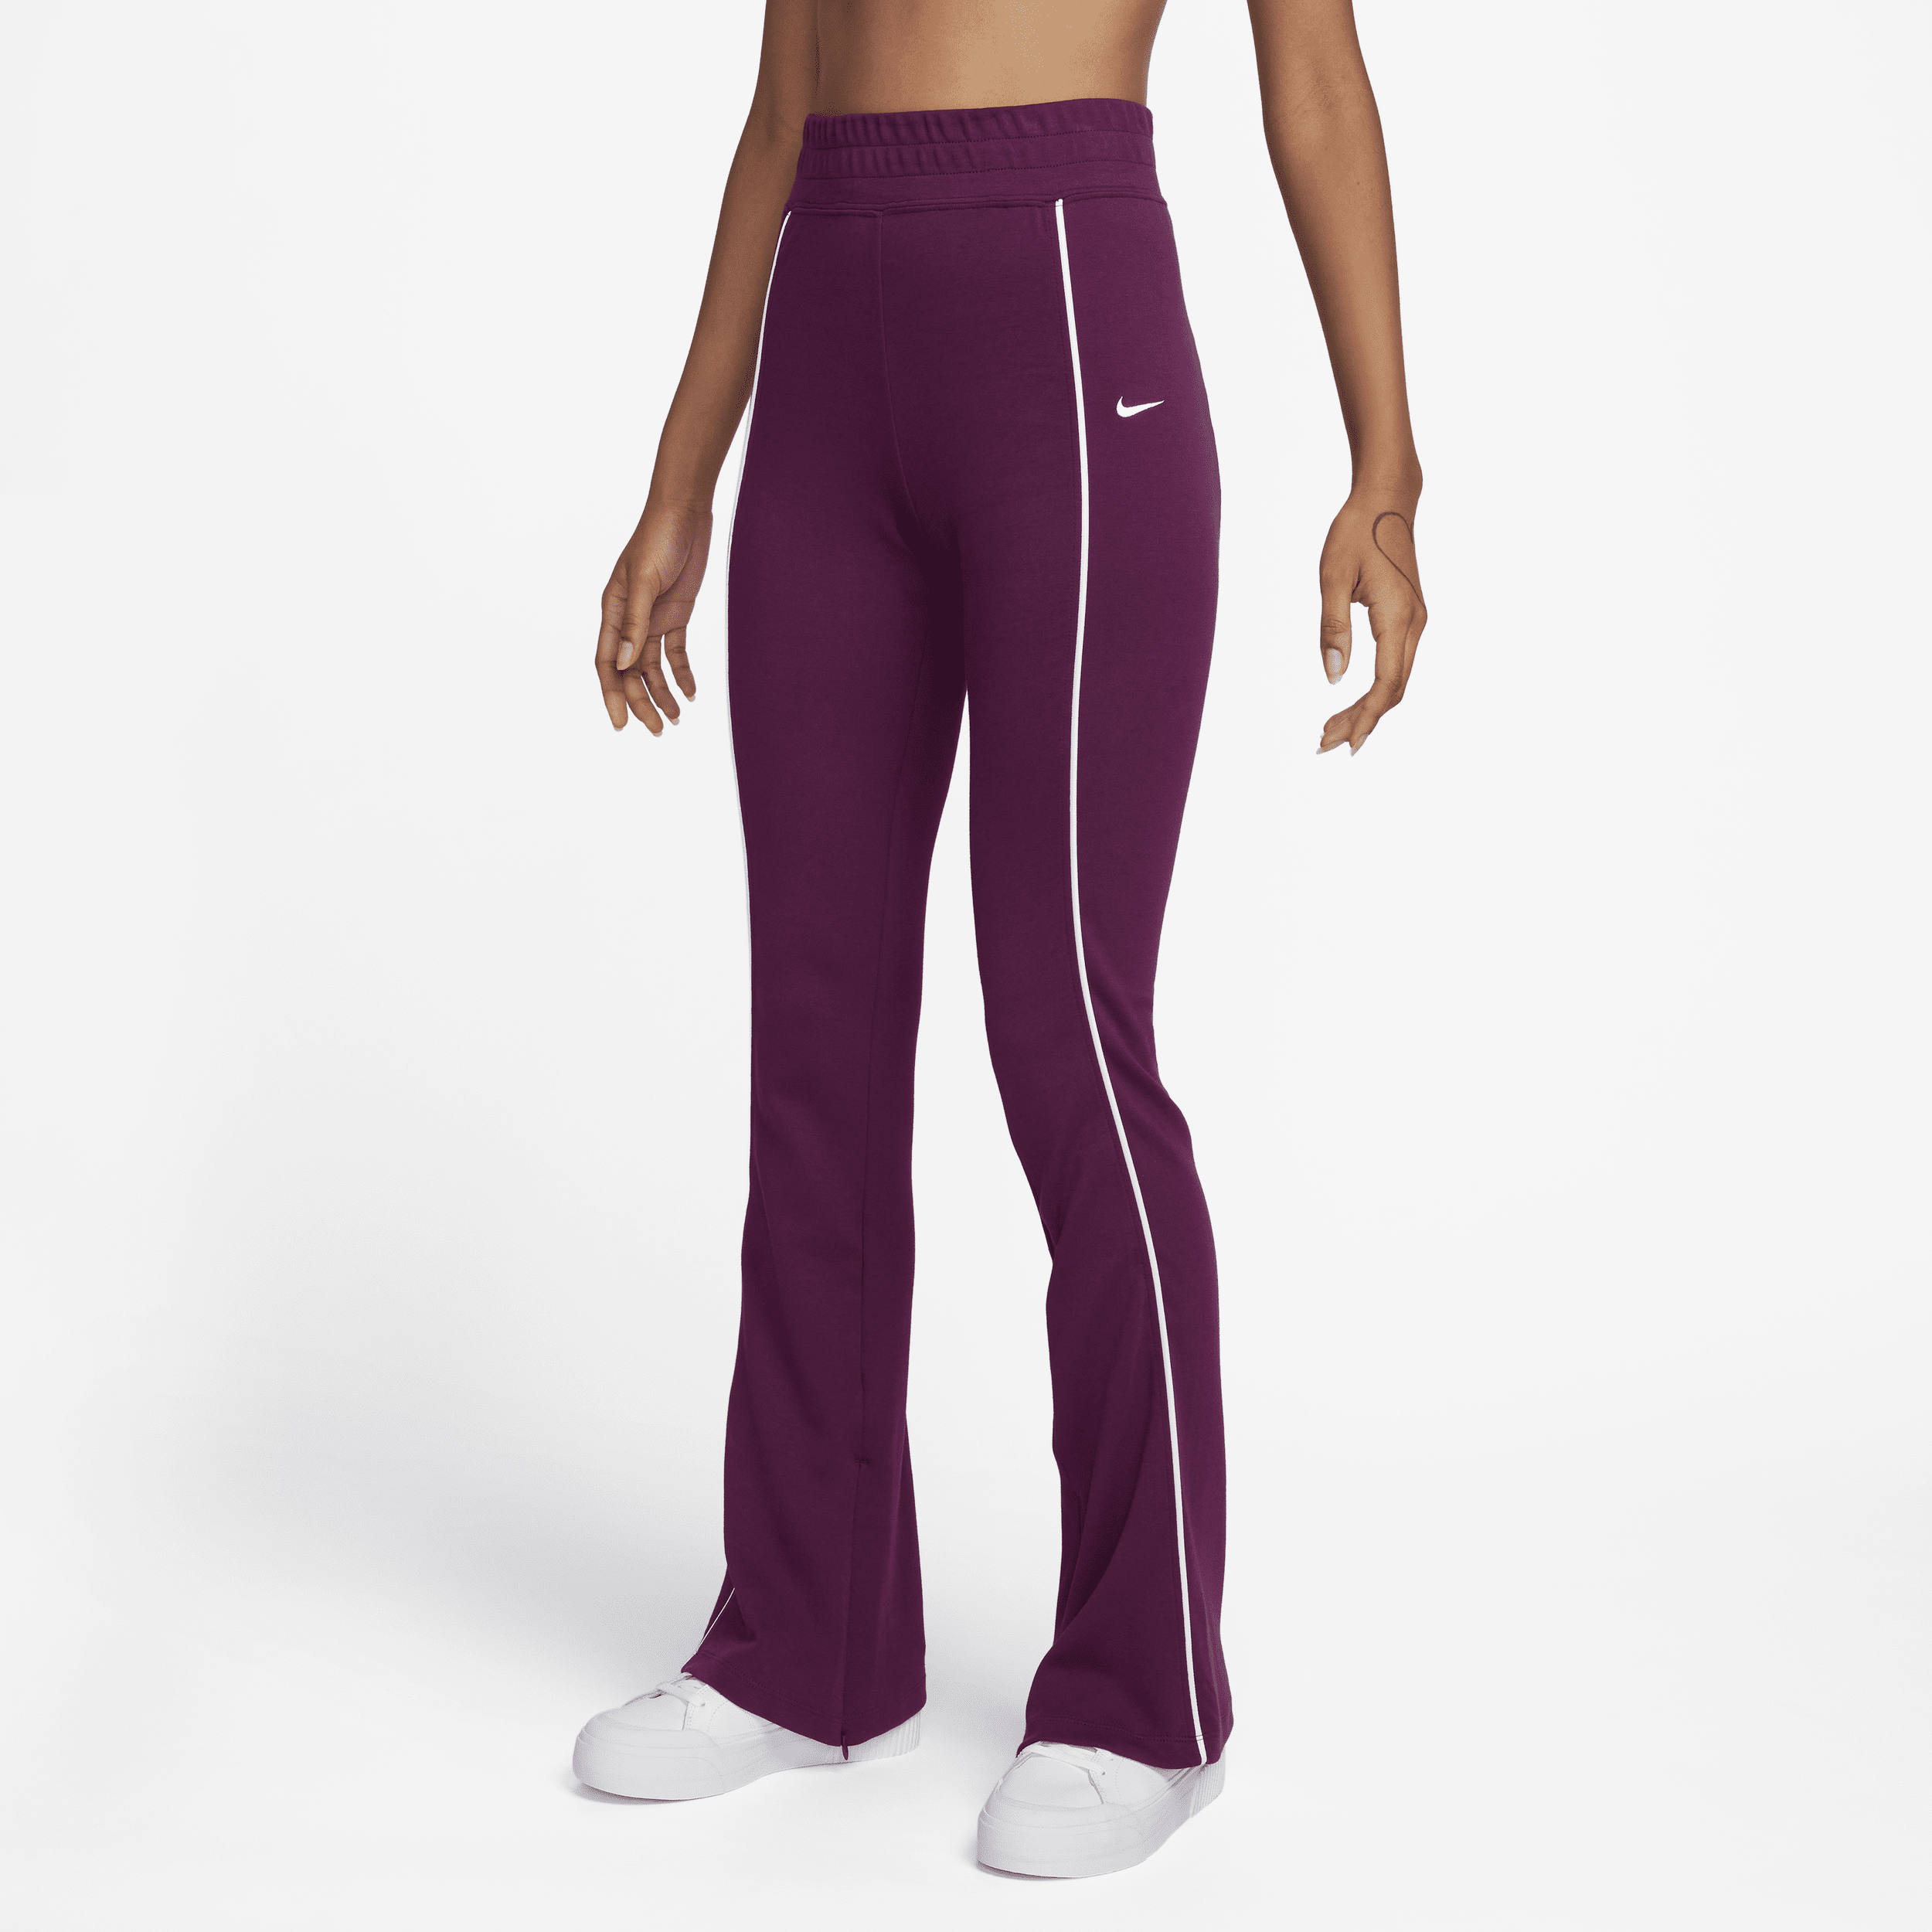 Bukser med slidskanter fra Nike Sportswear-kollektionen til kvinder - rød